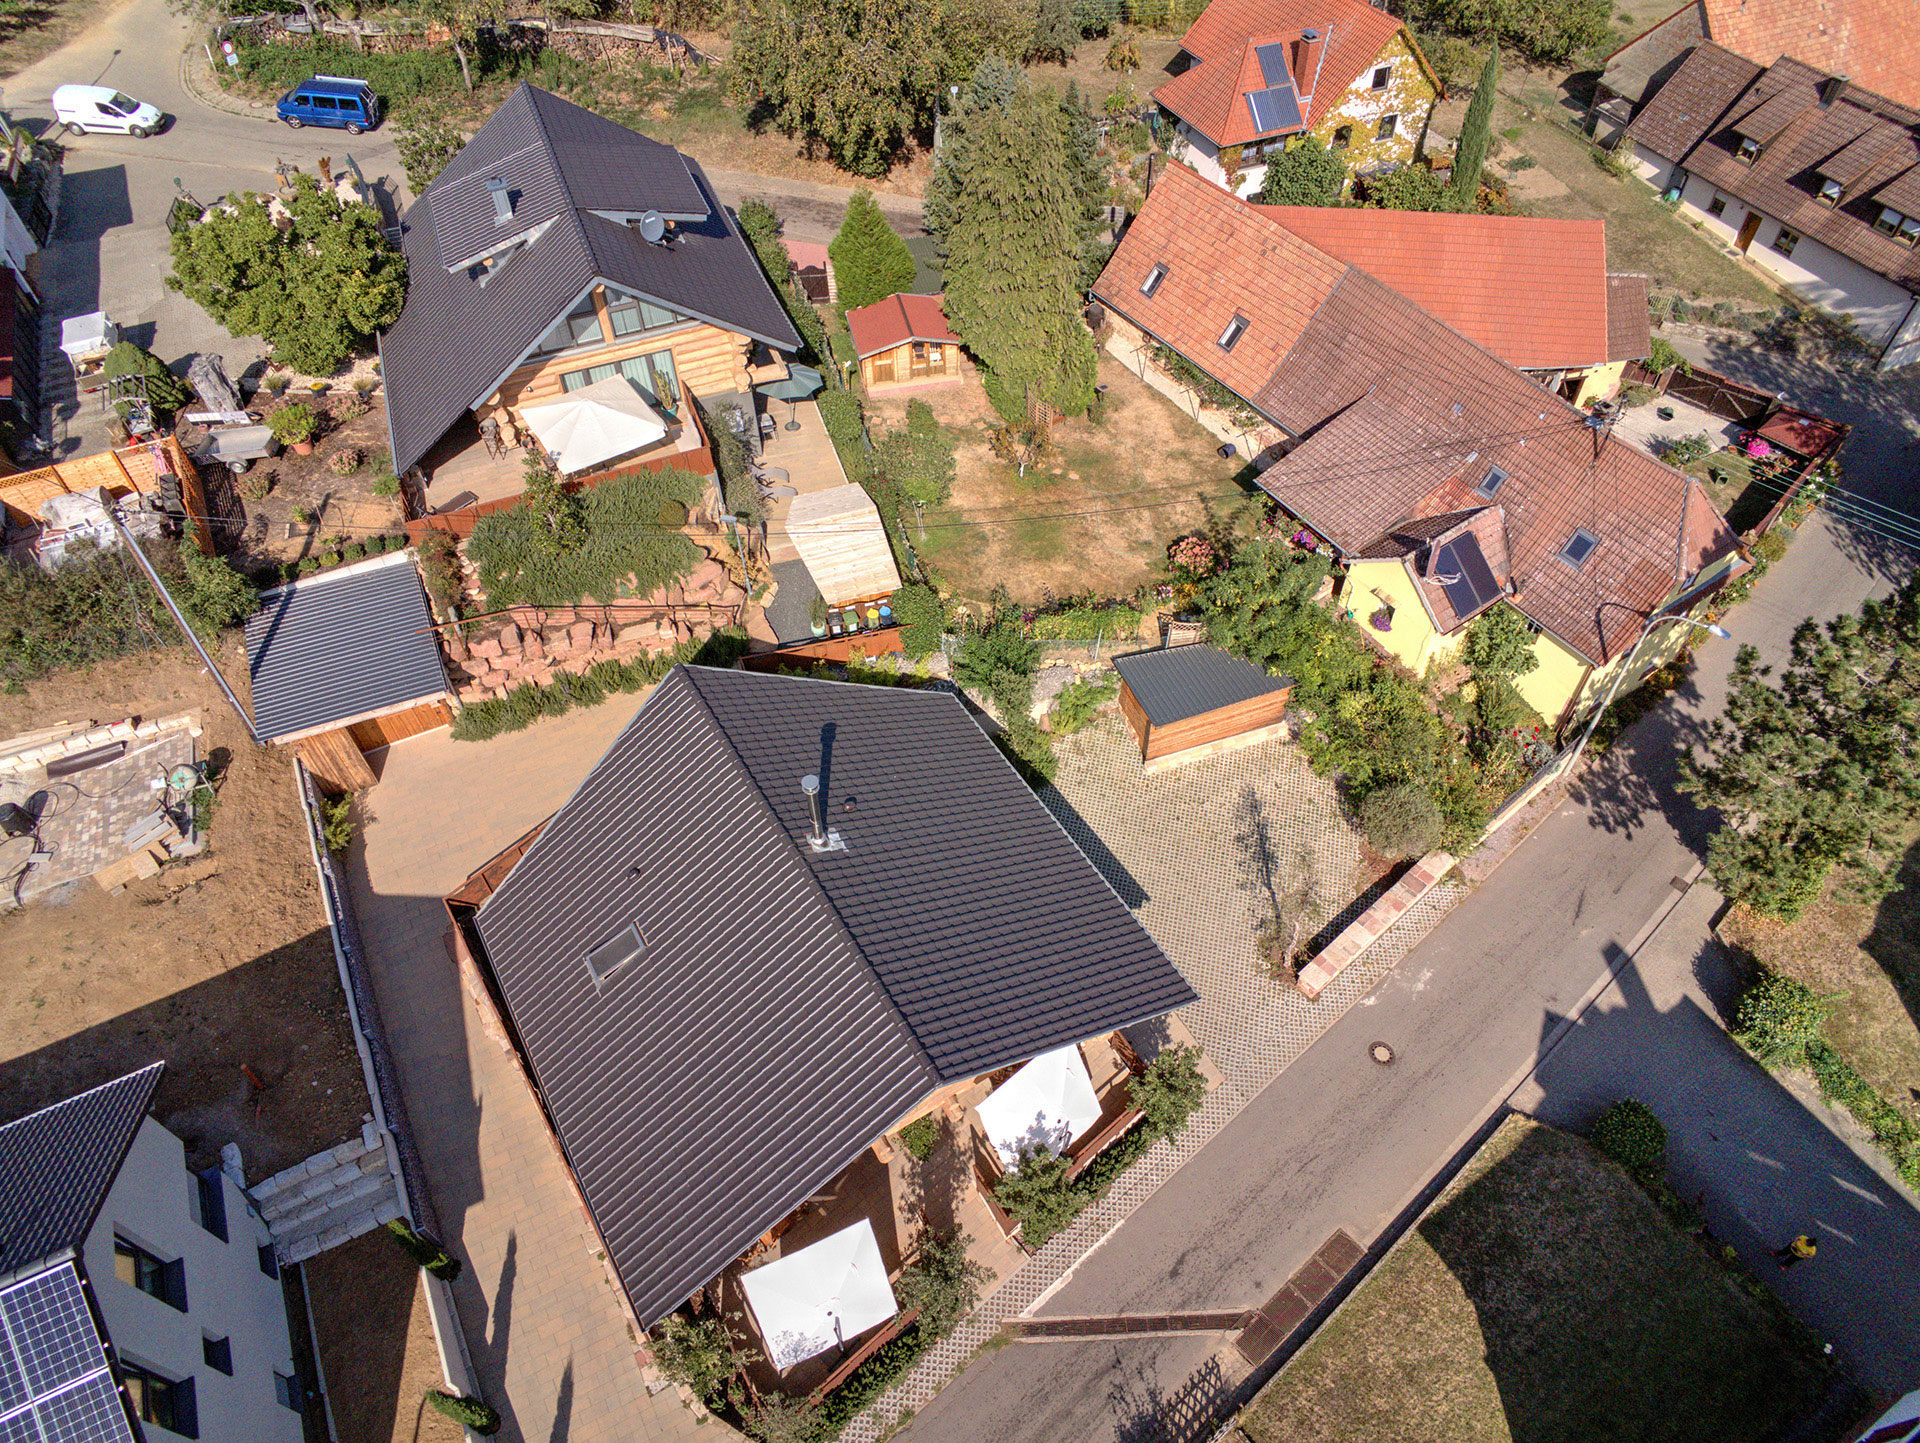 luftbildaufnahme ferienhaus von oben mit blick auf dach